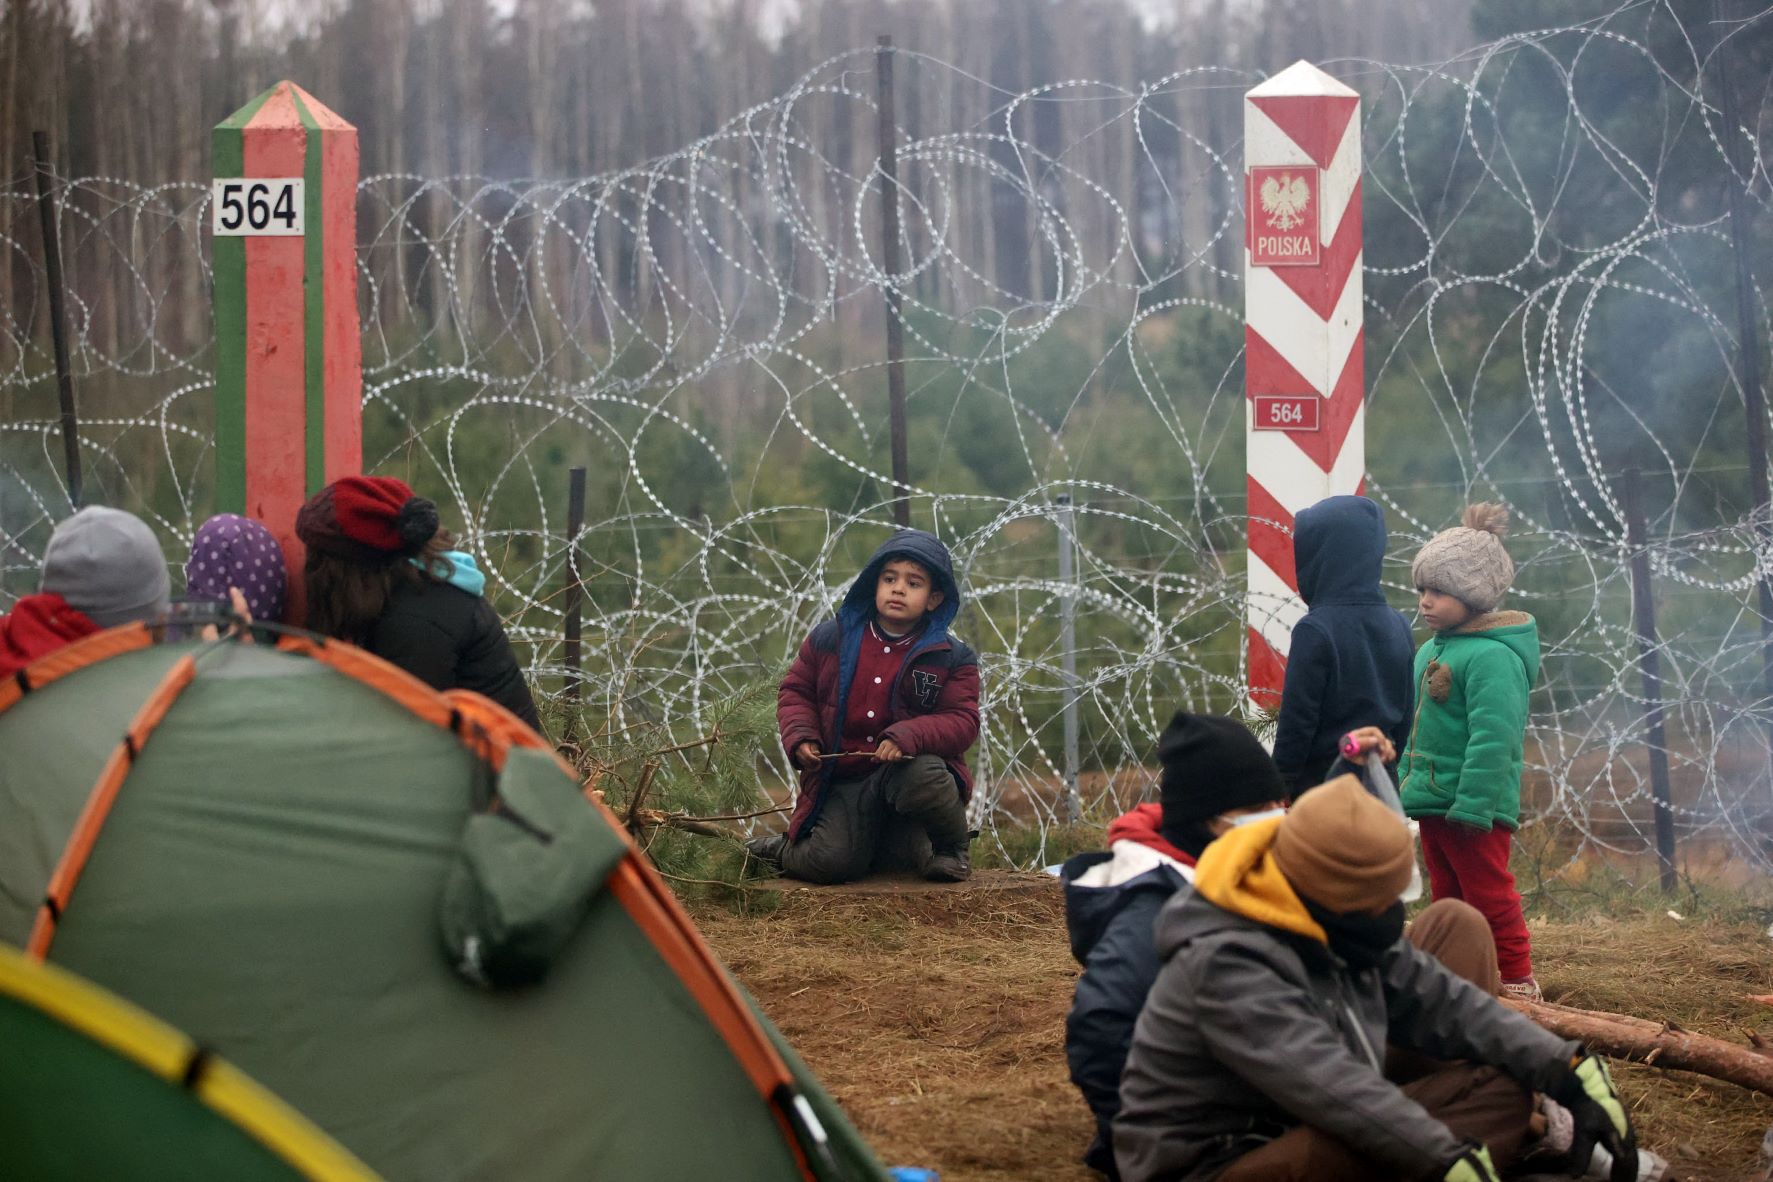 Des enfants se trouvent dans un camp de réfugiés à la frontière entre la Biélorussie et la Pologne, dans la région de Hrodna, le 12 novembre 2021 (AFP)